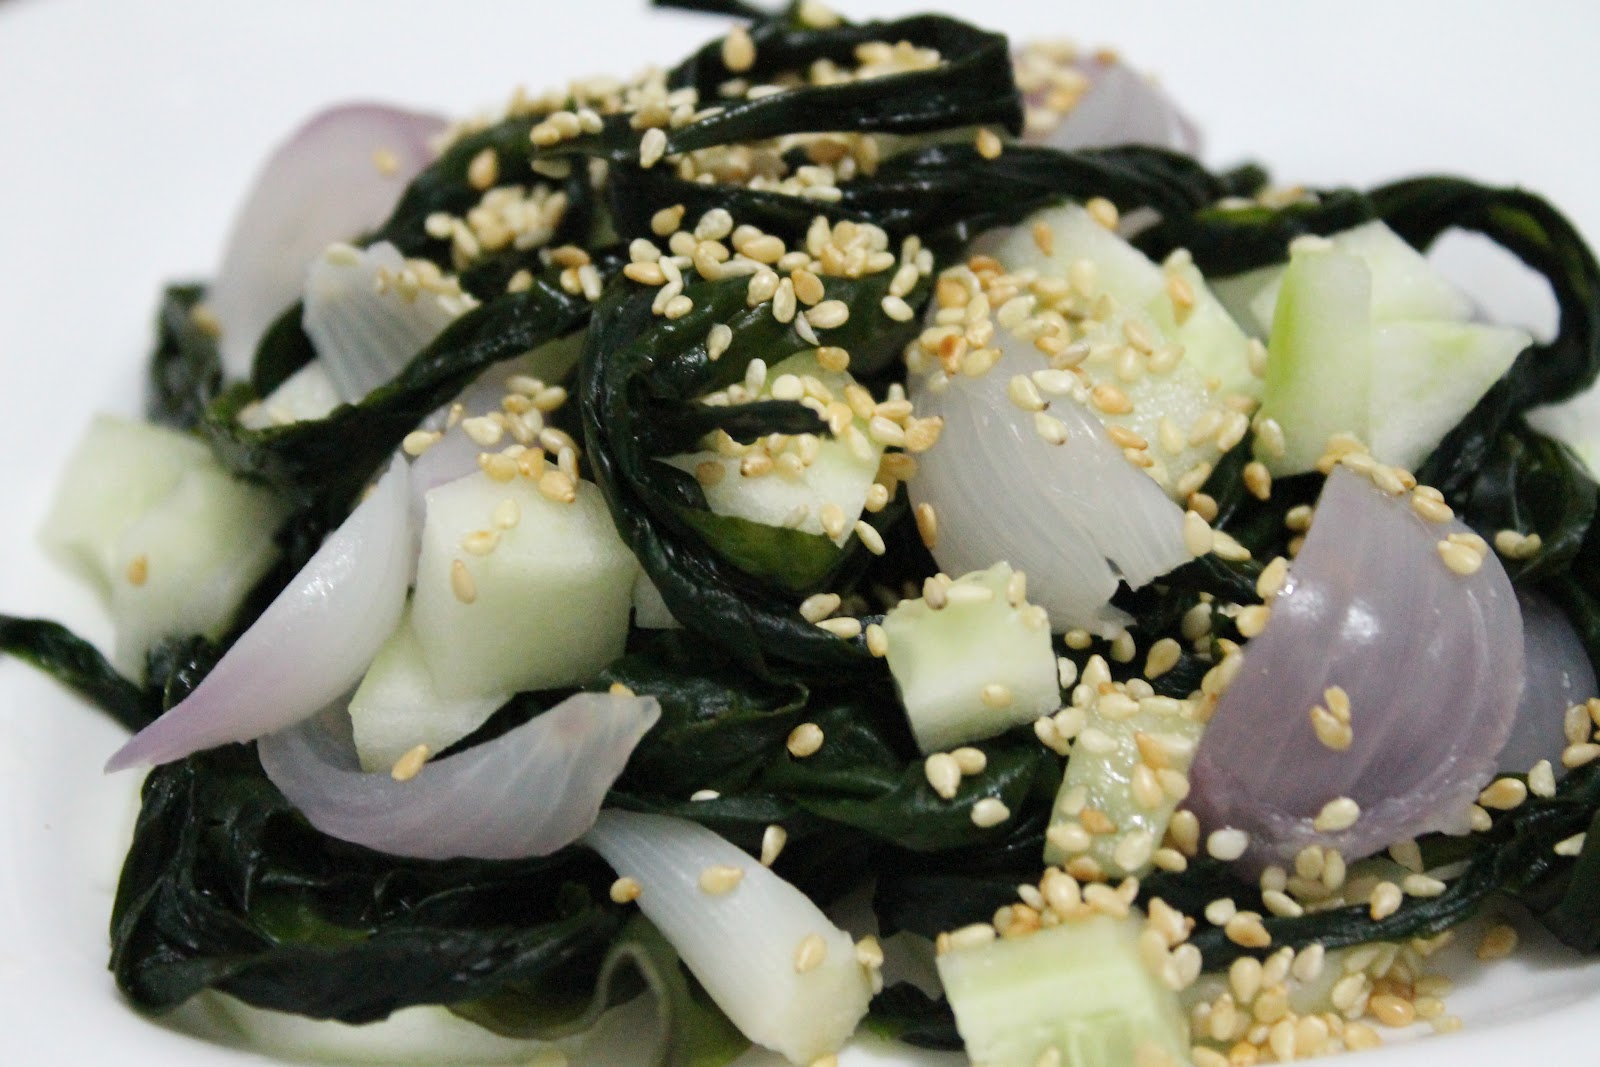 El capricho saludable: Insalata di alga wakame e cipolline rosse - Ensalada  de alga wakame y cebollas rojas